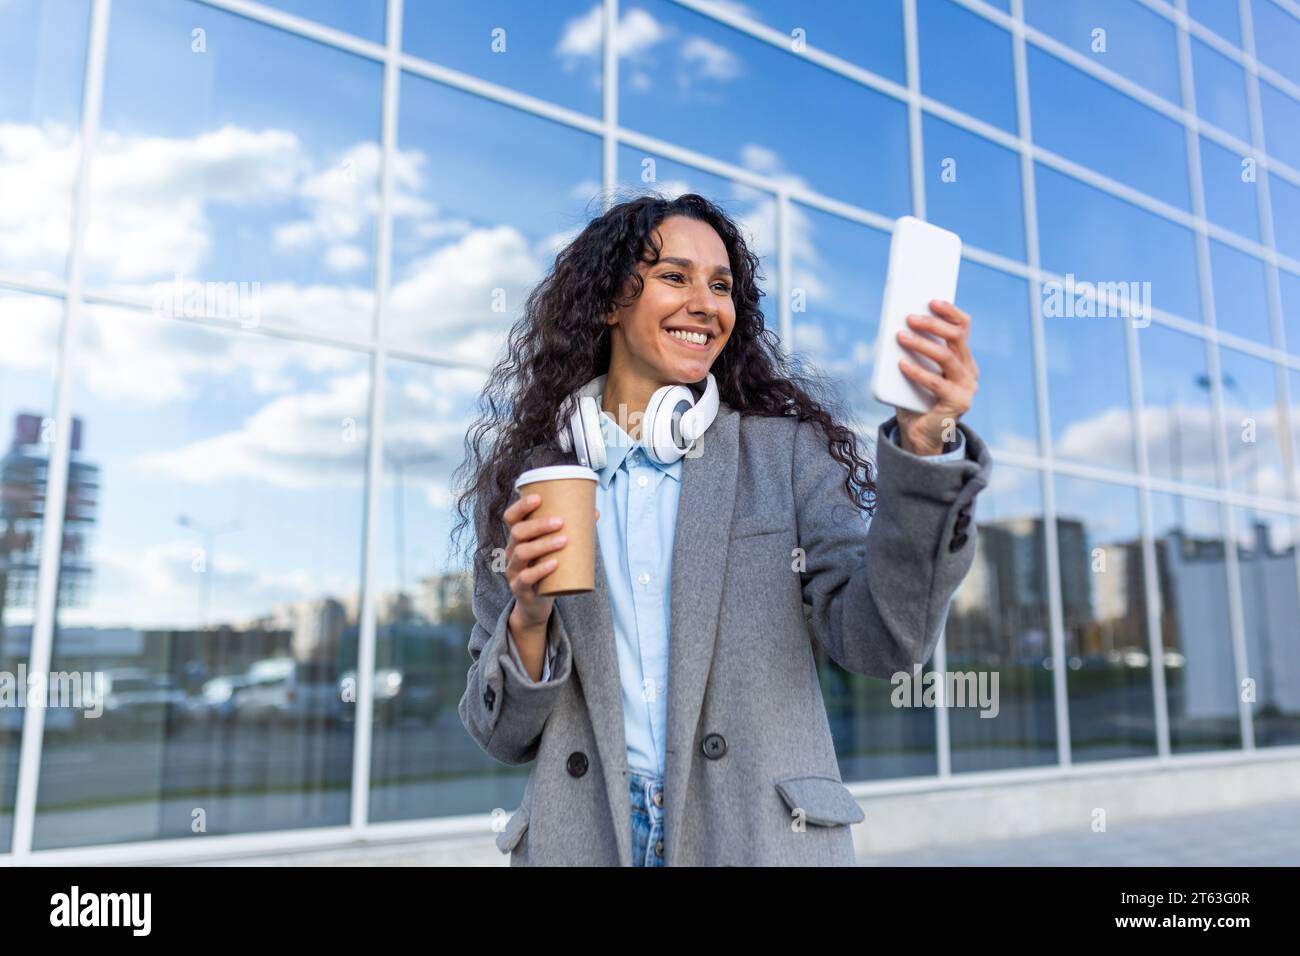 Junge schöne Frau, die in der Stadt vor einem Bürogebäude spaziert, hispanische Frau in einem Mantel mit Kopfhörern, eine Tasse heißes Getränk und ein Telefon, Musik hören und im Internet surfen. Stockfoto